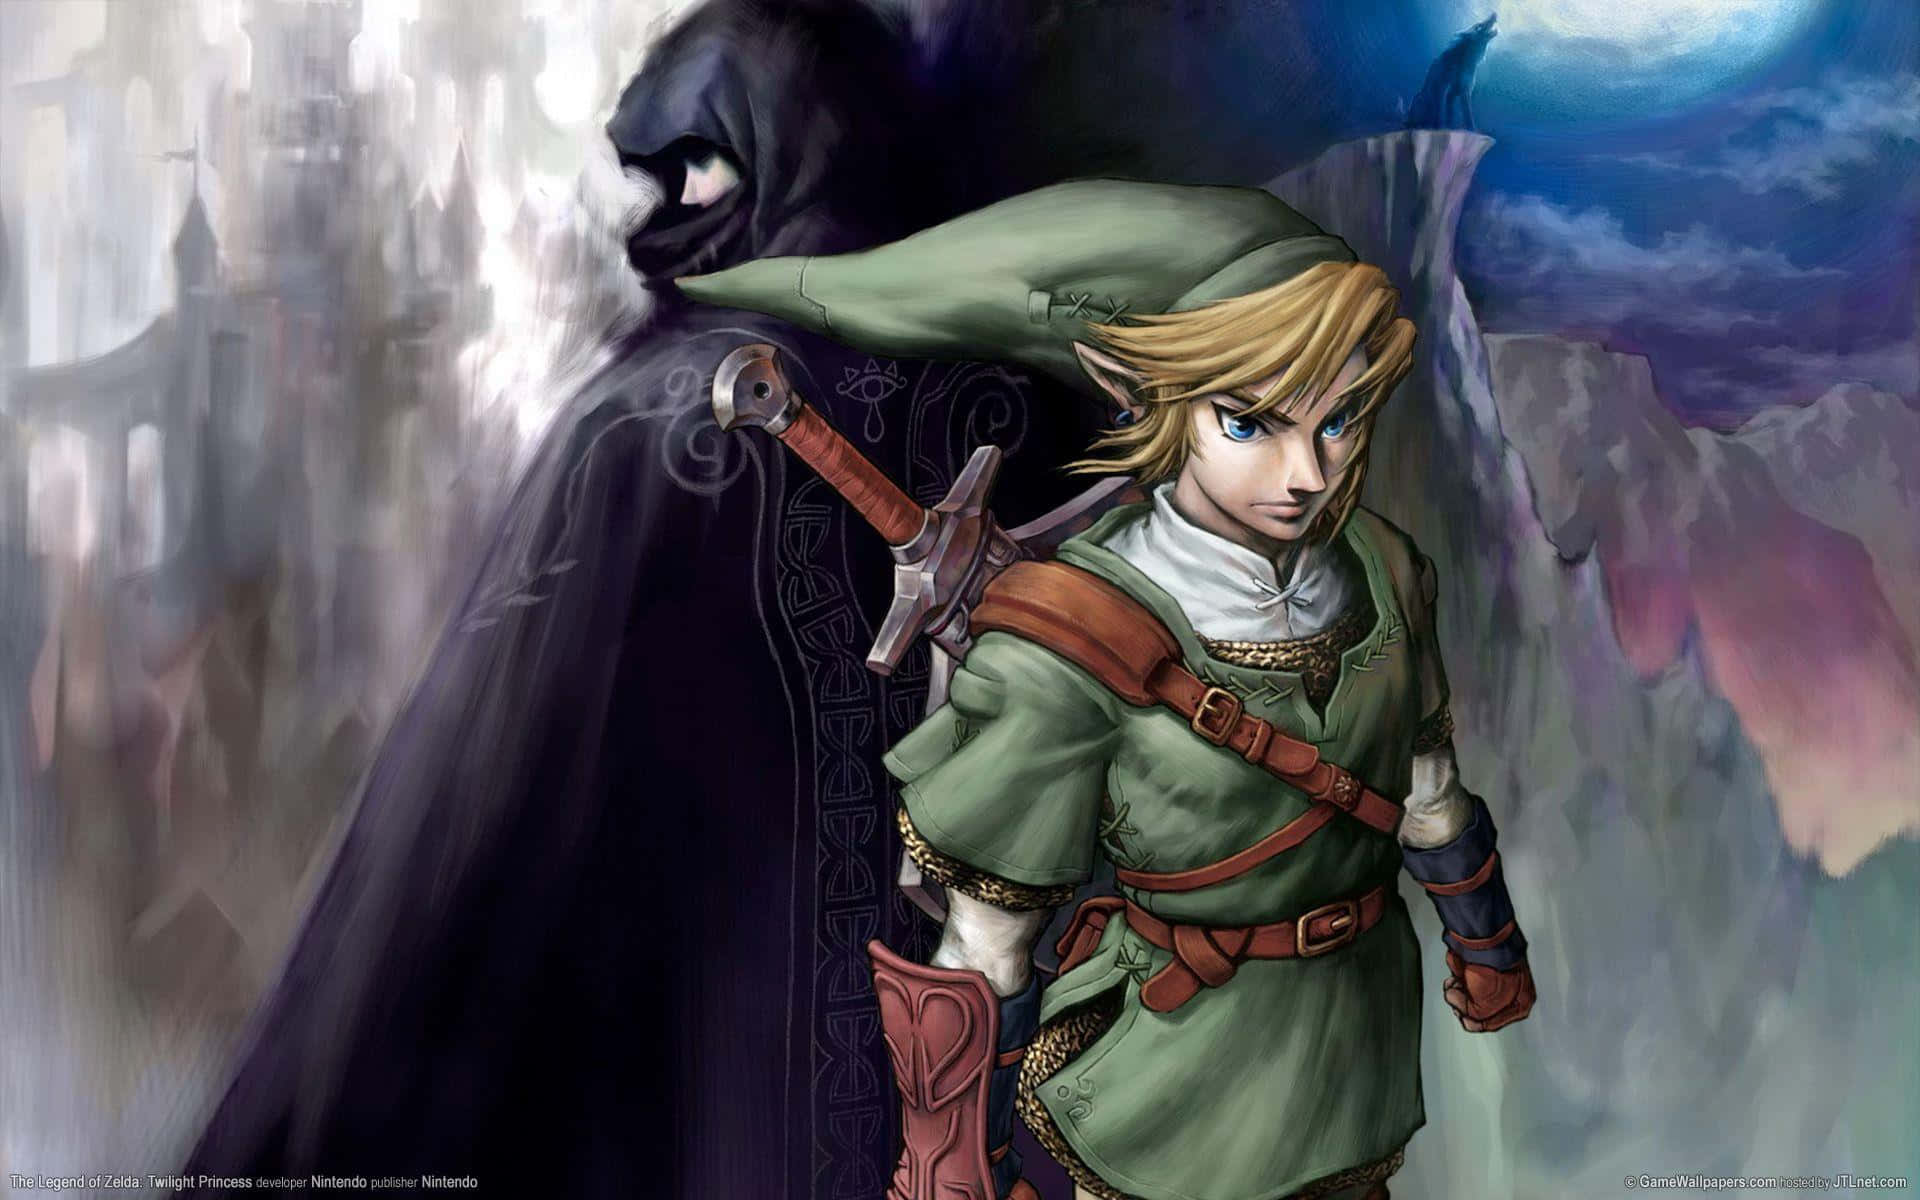 Erkundedie Geheimnisvolle Welt Von Hyrule In The Legend Of Zelda: Twilight Princess. Wallpaper